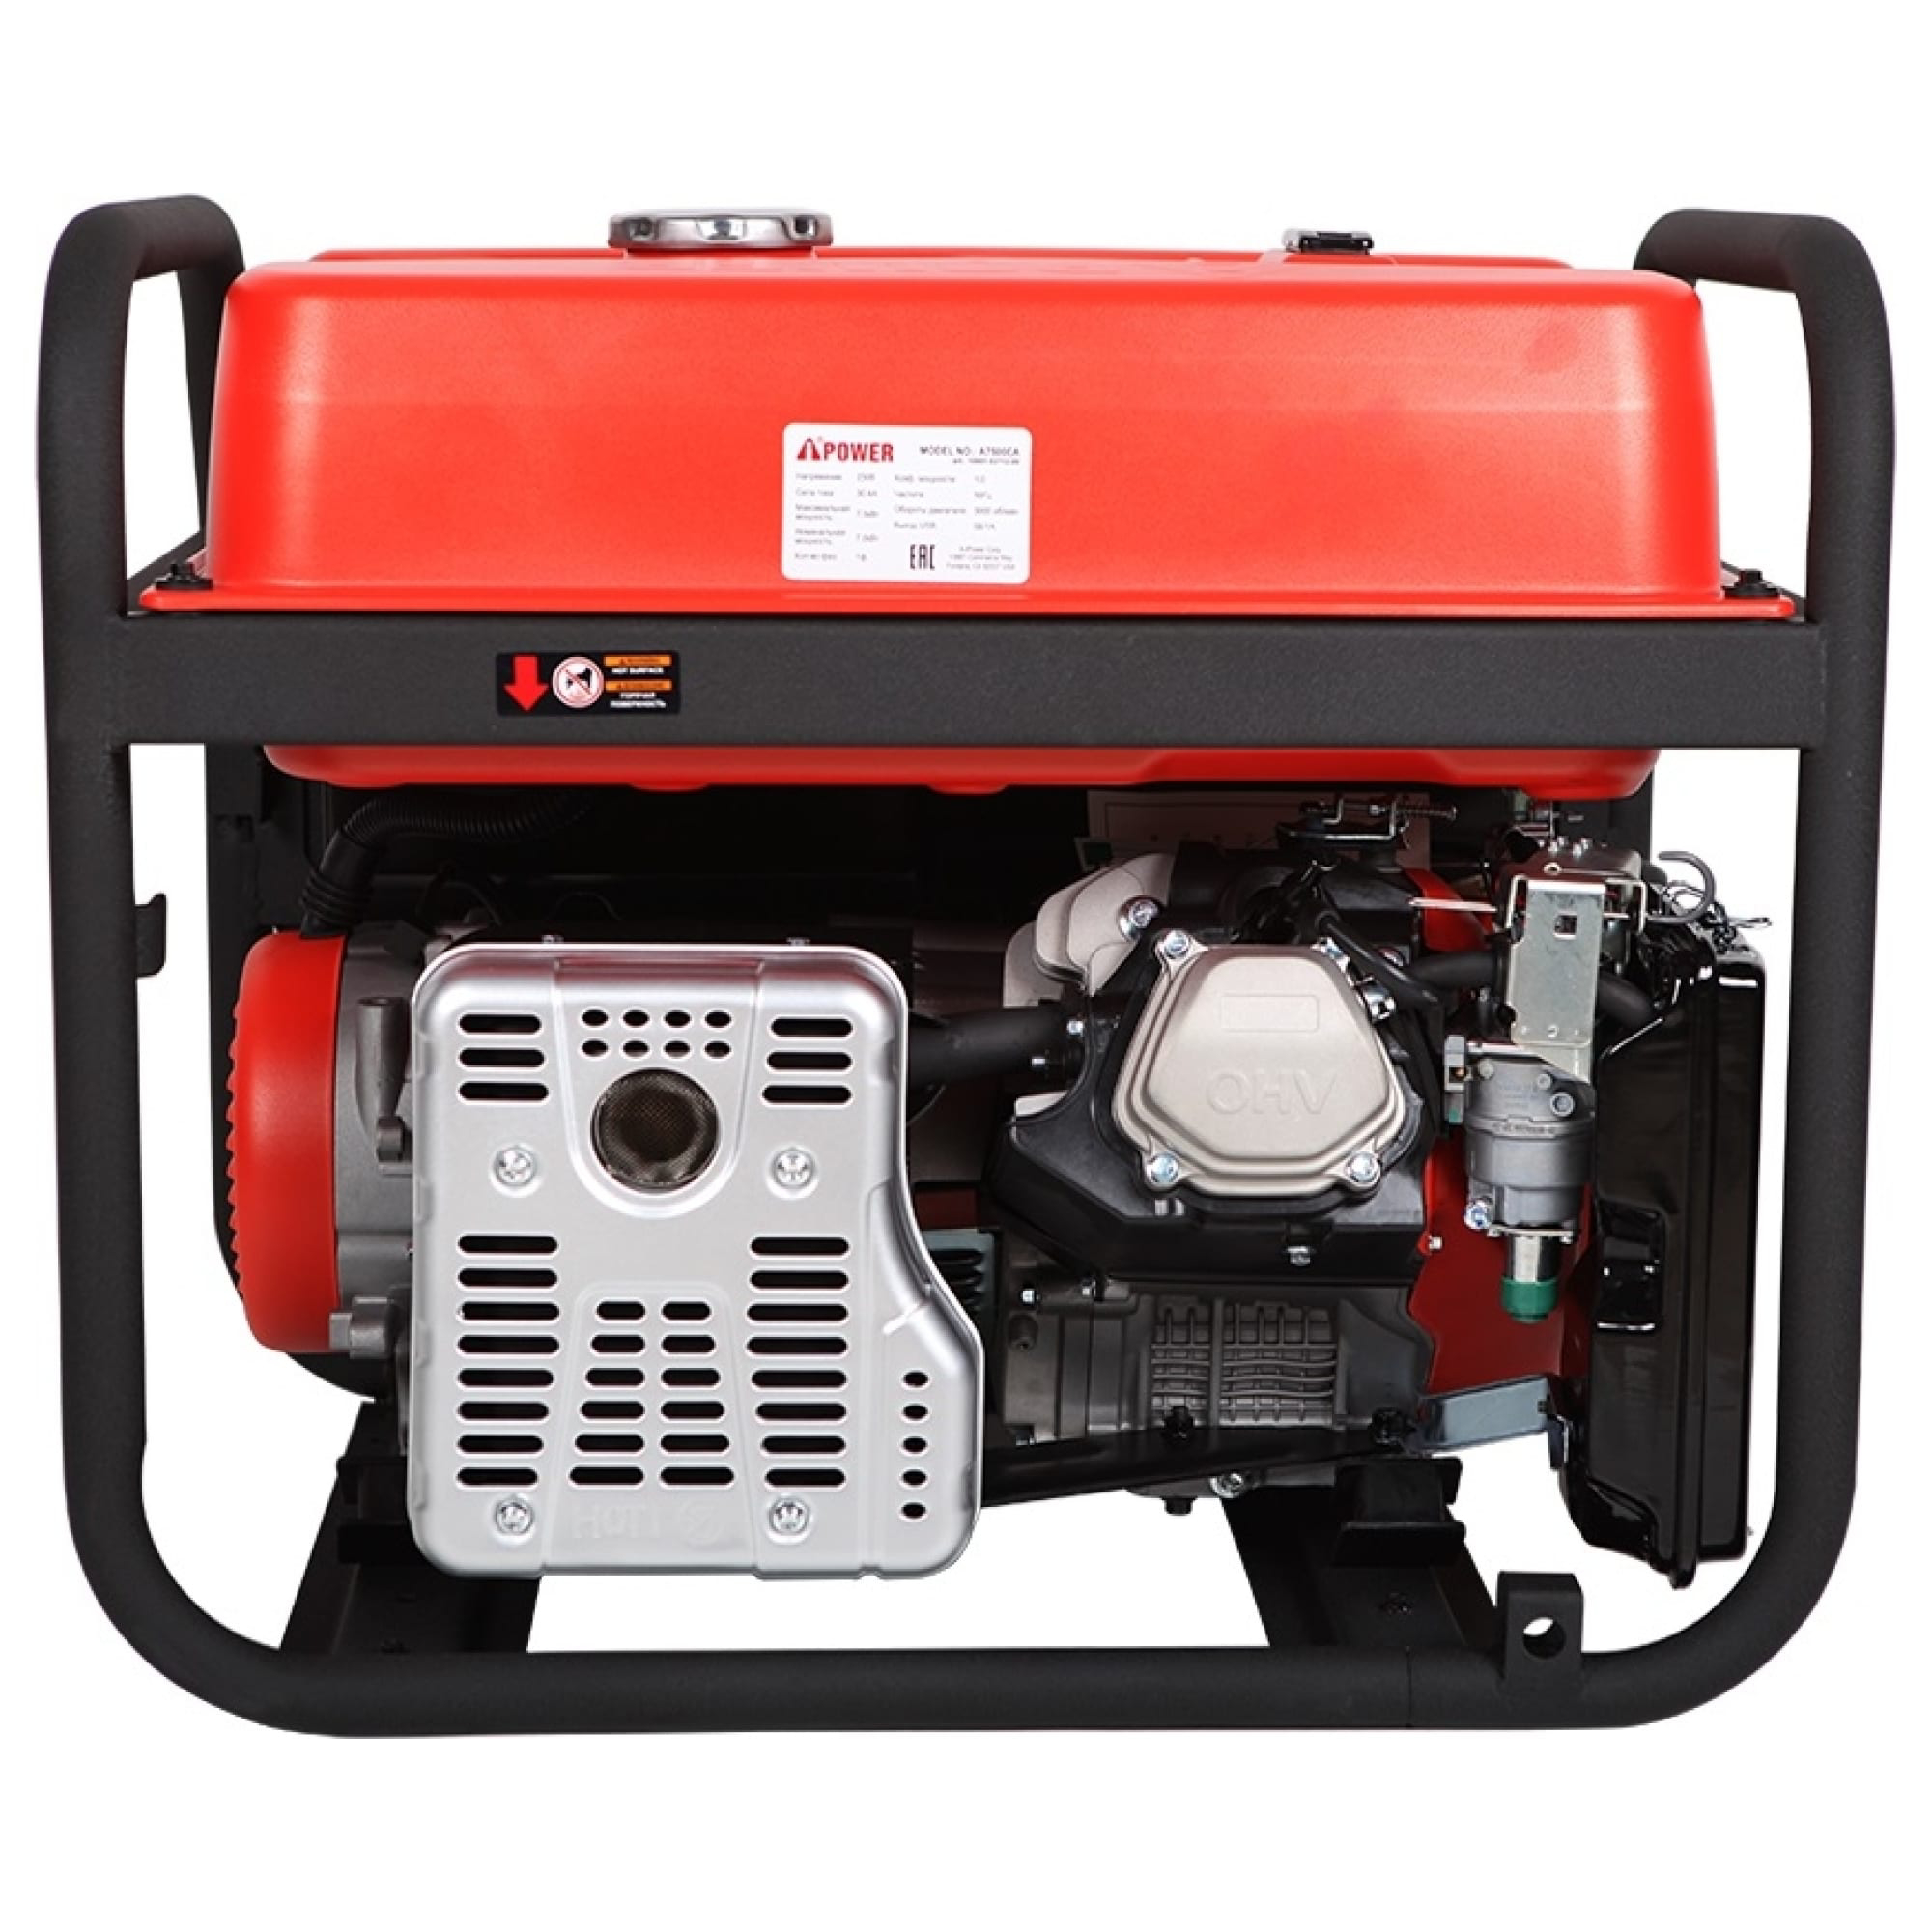 Бензиновый генератор Power с электростартером и ATS 7,5 кВт (A7500EA), цвет красный Е1000 - фото 3